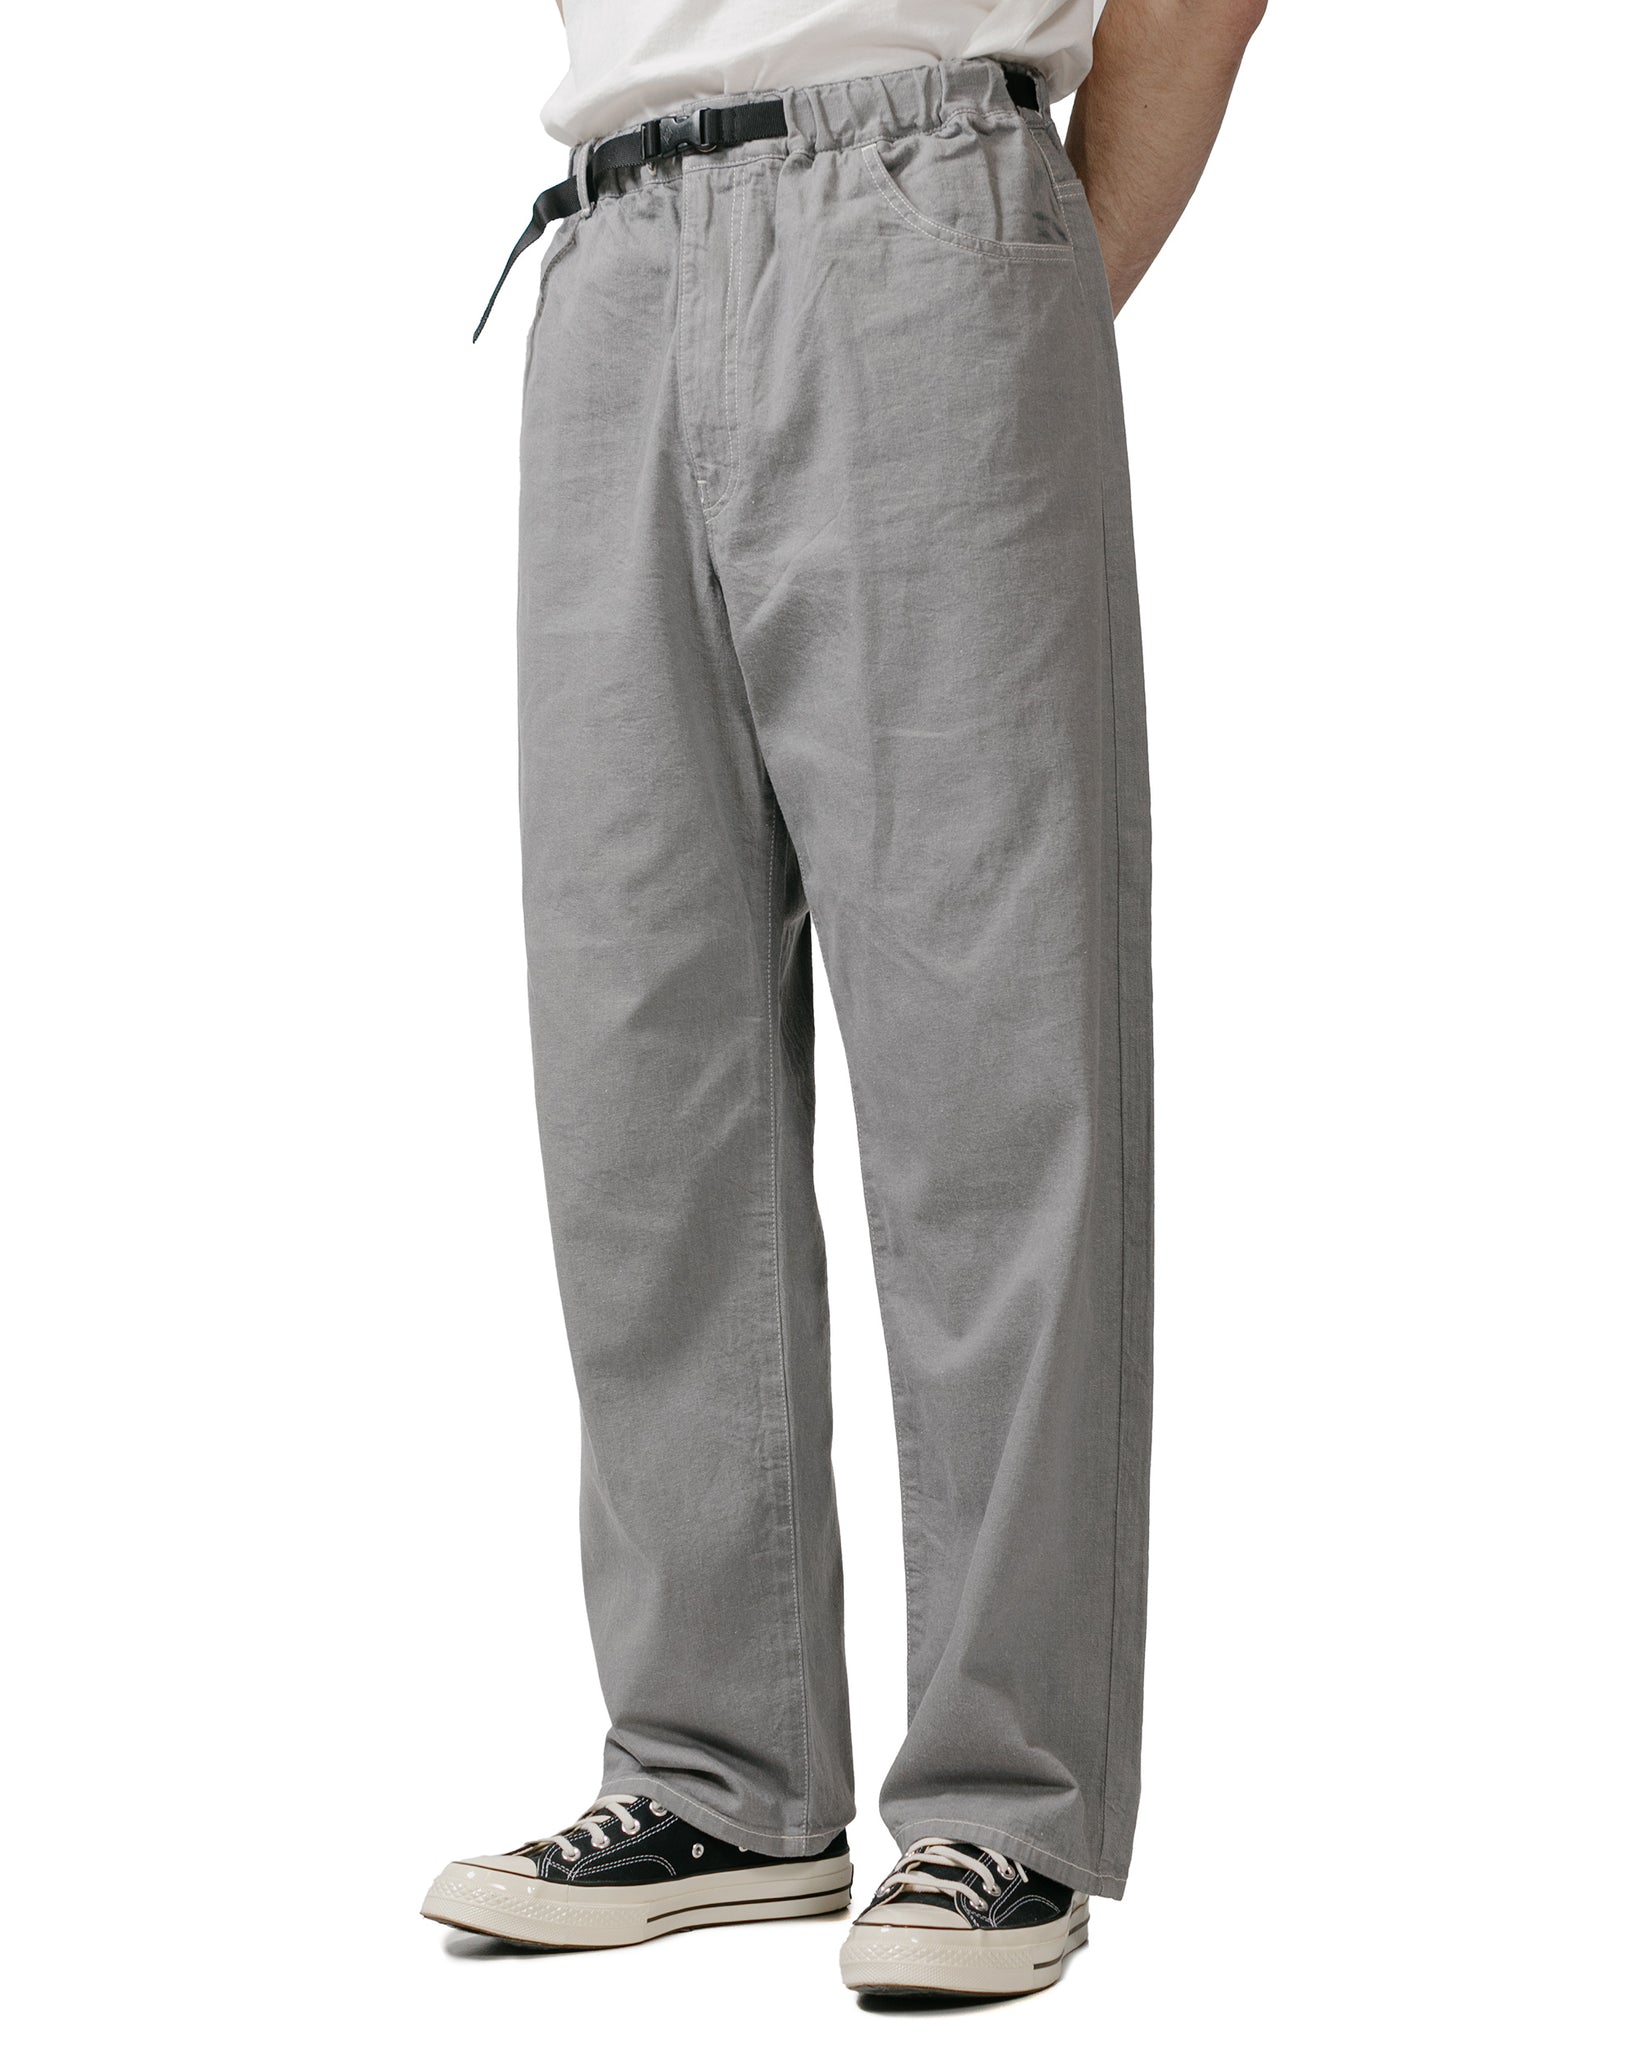 Danton Colour Denim Belted Easy Pant Grey model front